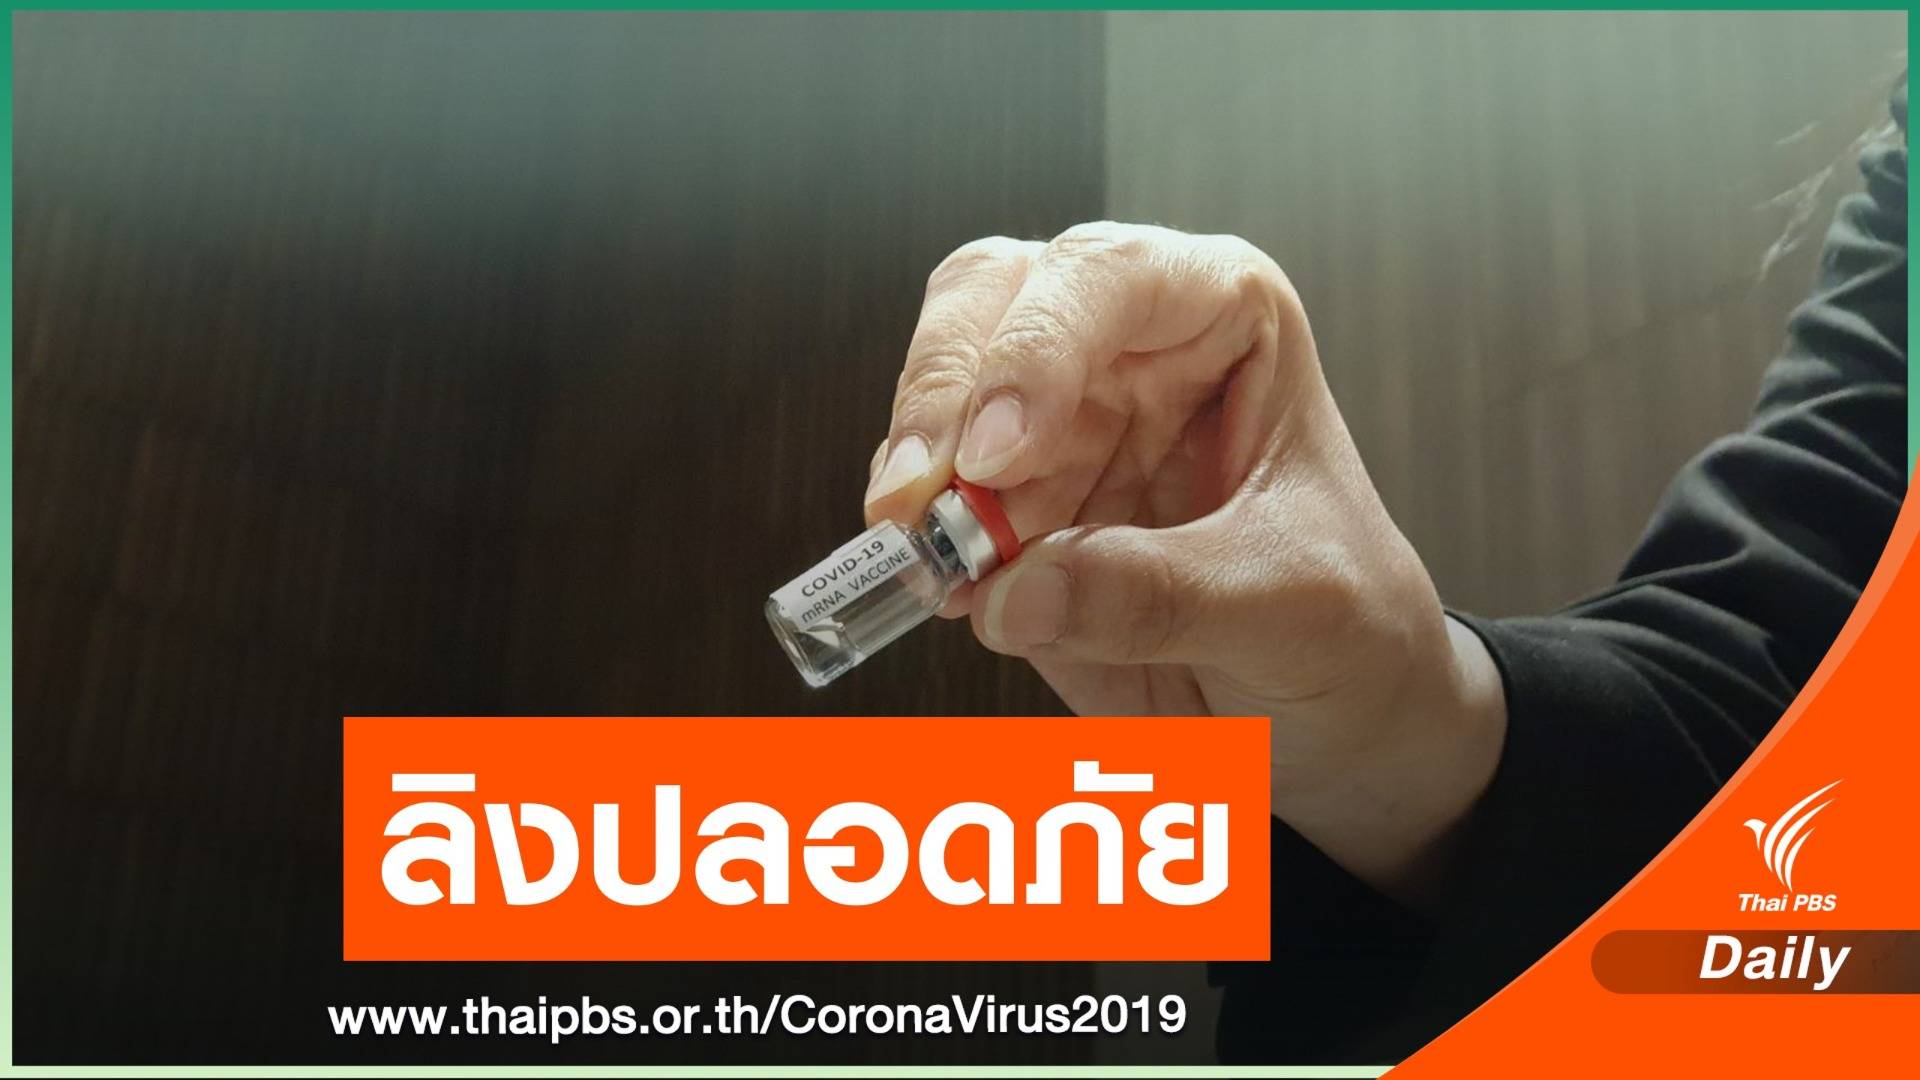 สัญญาณดี! วัคซีน COVID-19 ทดสอบในลิงปลอดภัย-มีภูมิคุ้มกัน 